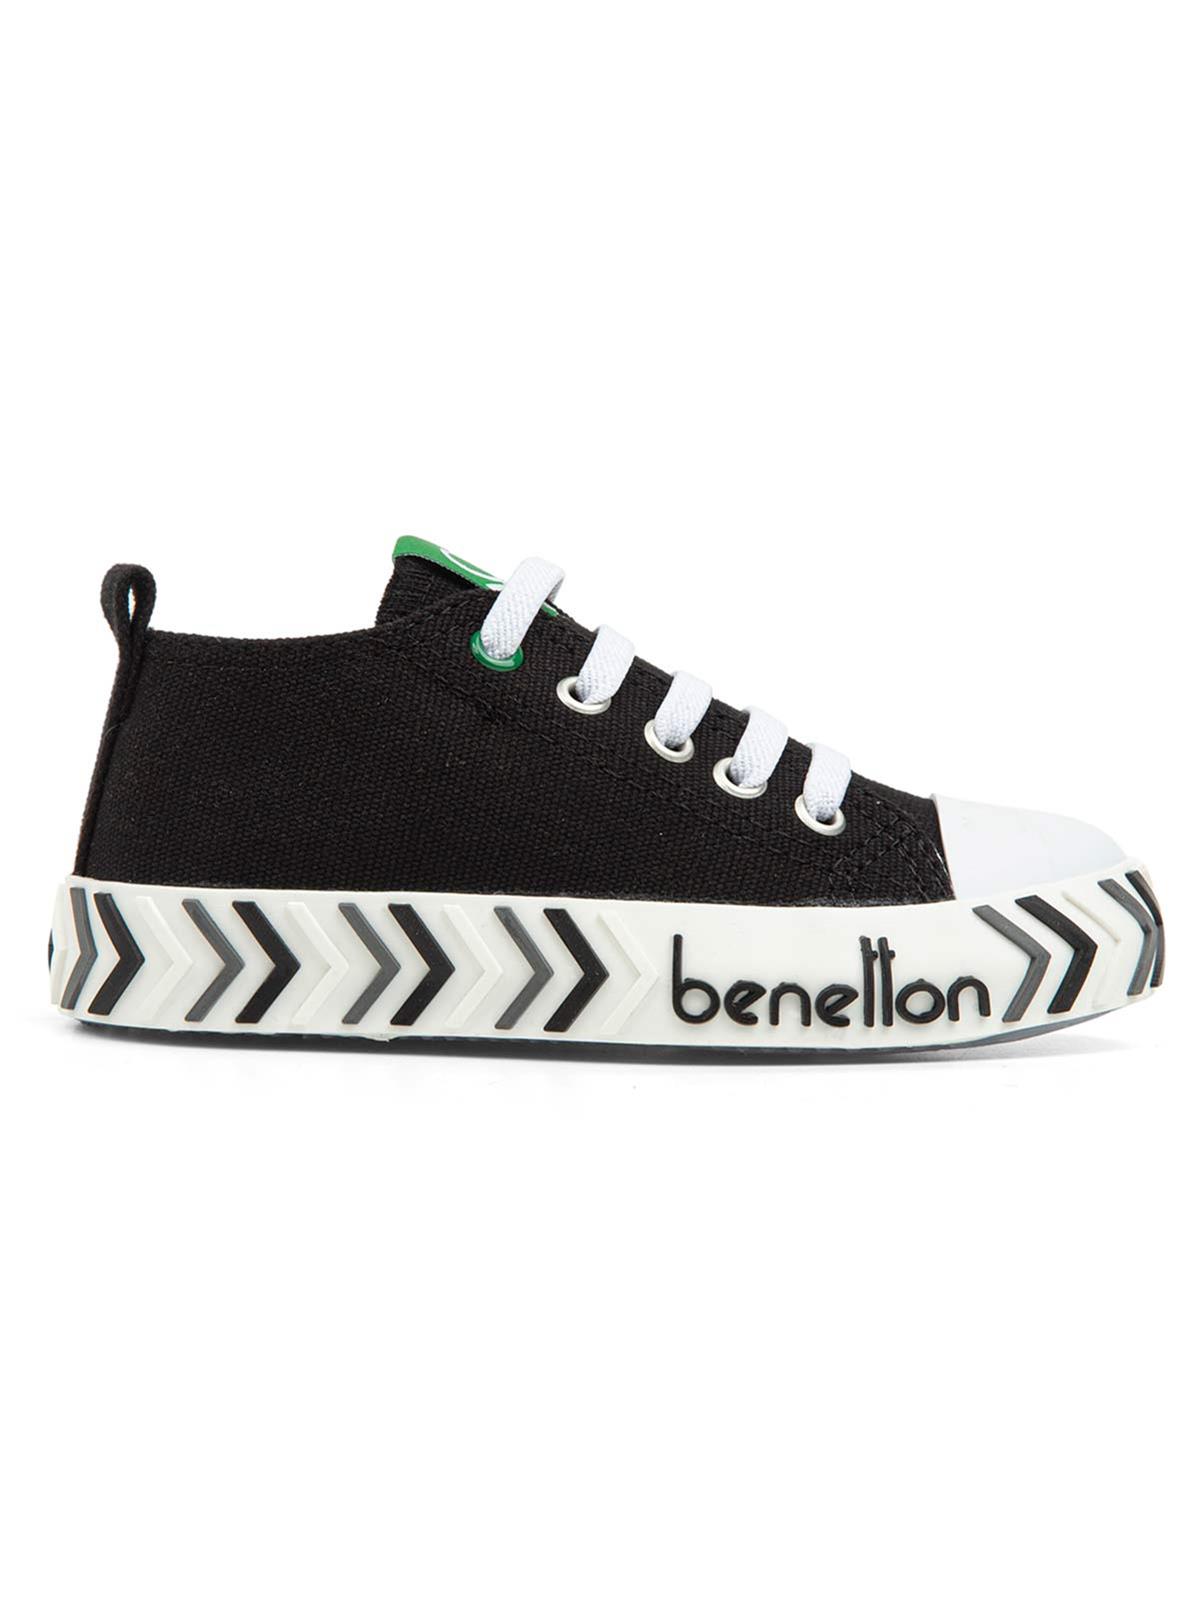 Benetton Erkek Çocuk Spor Ayakkabı 26-30 Numara Siyah